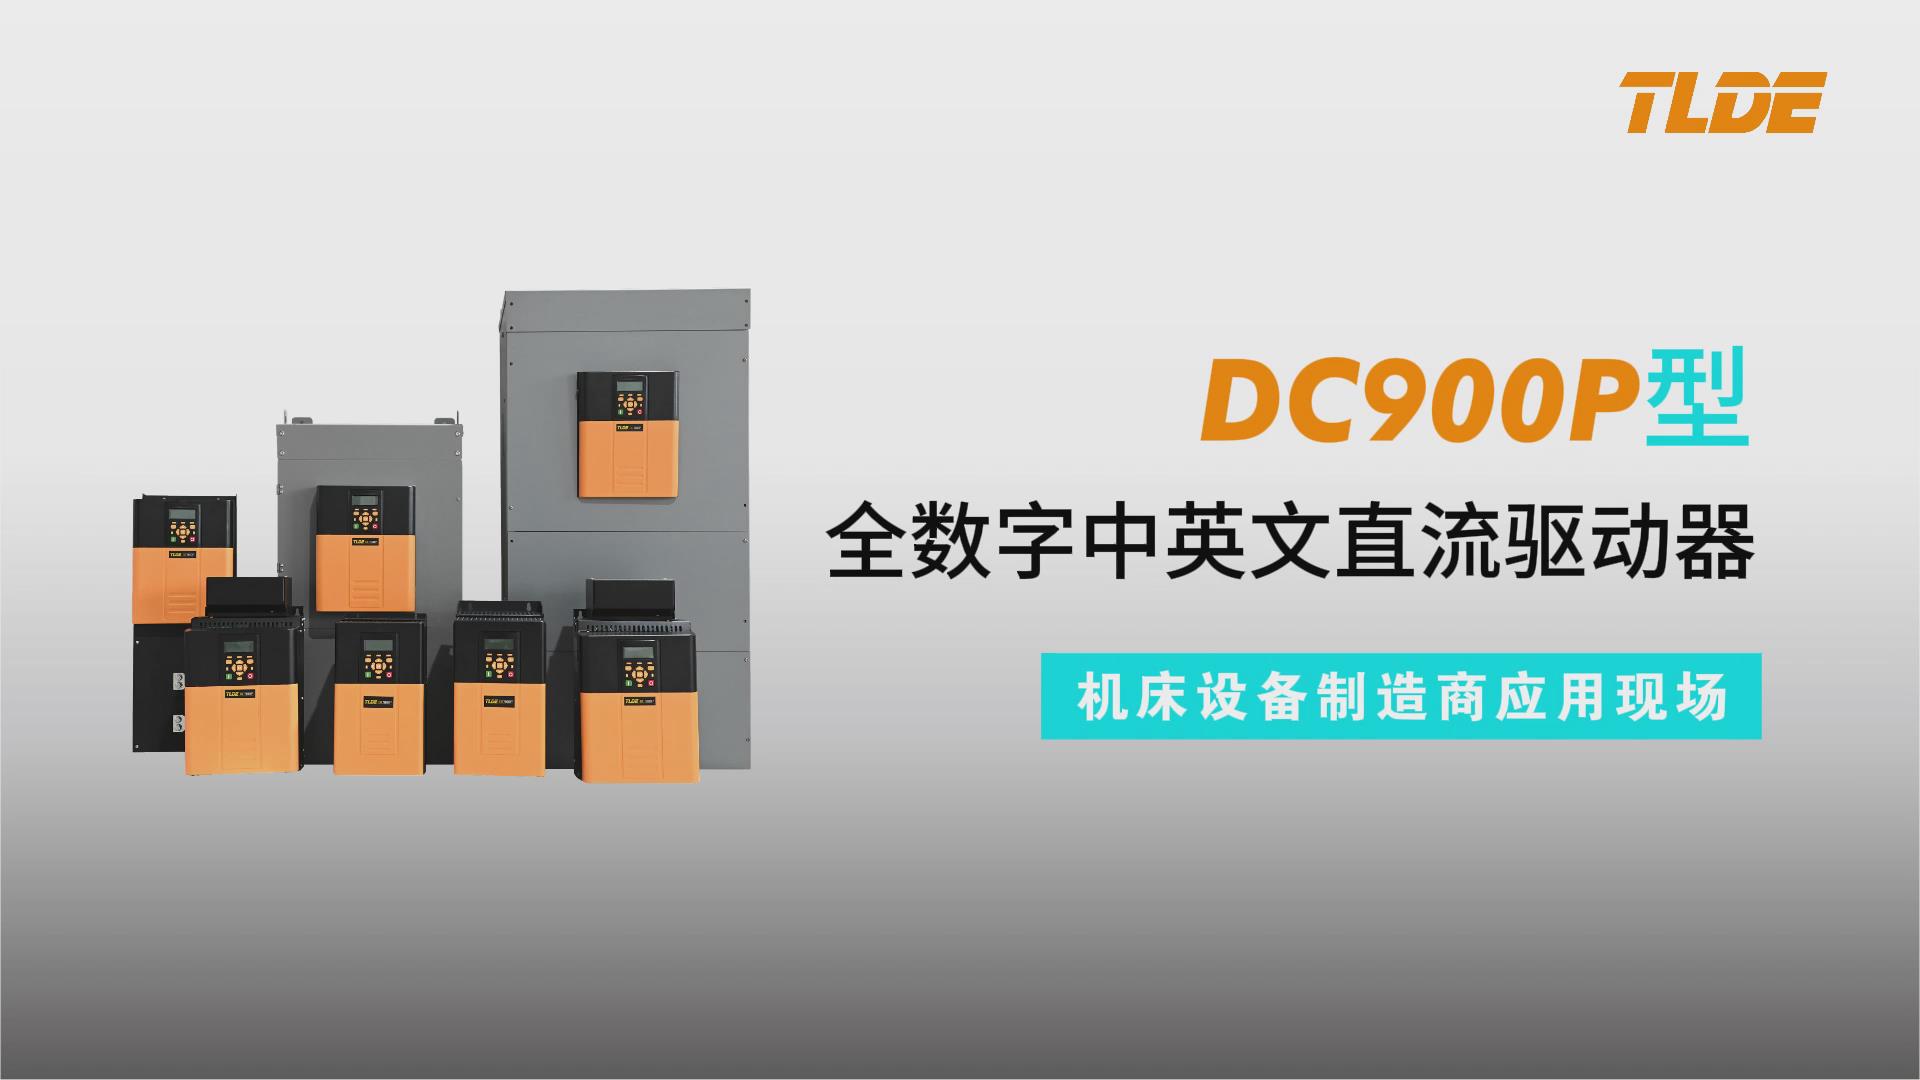 DC900P系列直流驱动器应用于机床设备制造商现场！